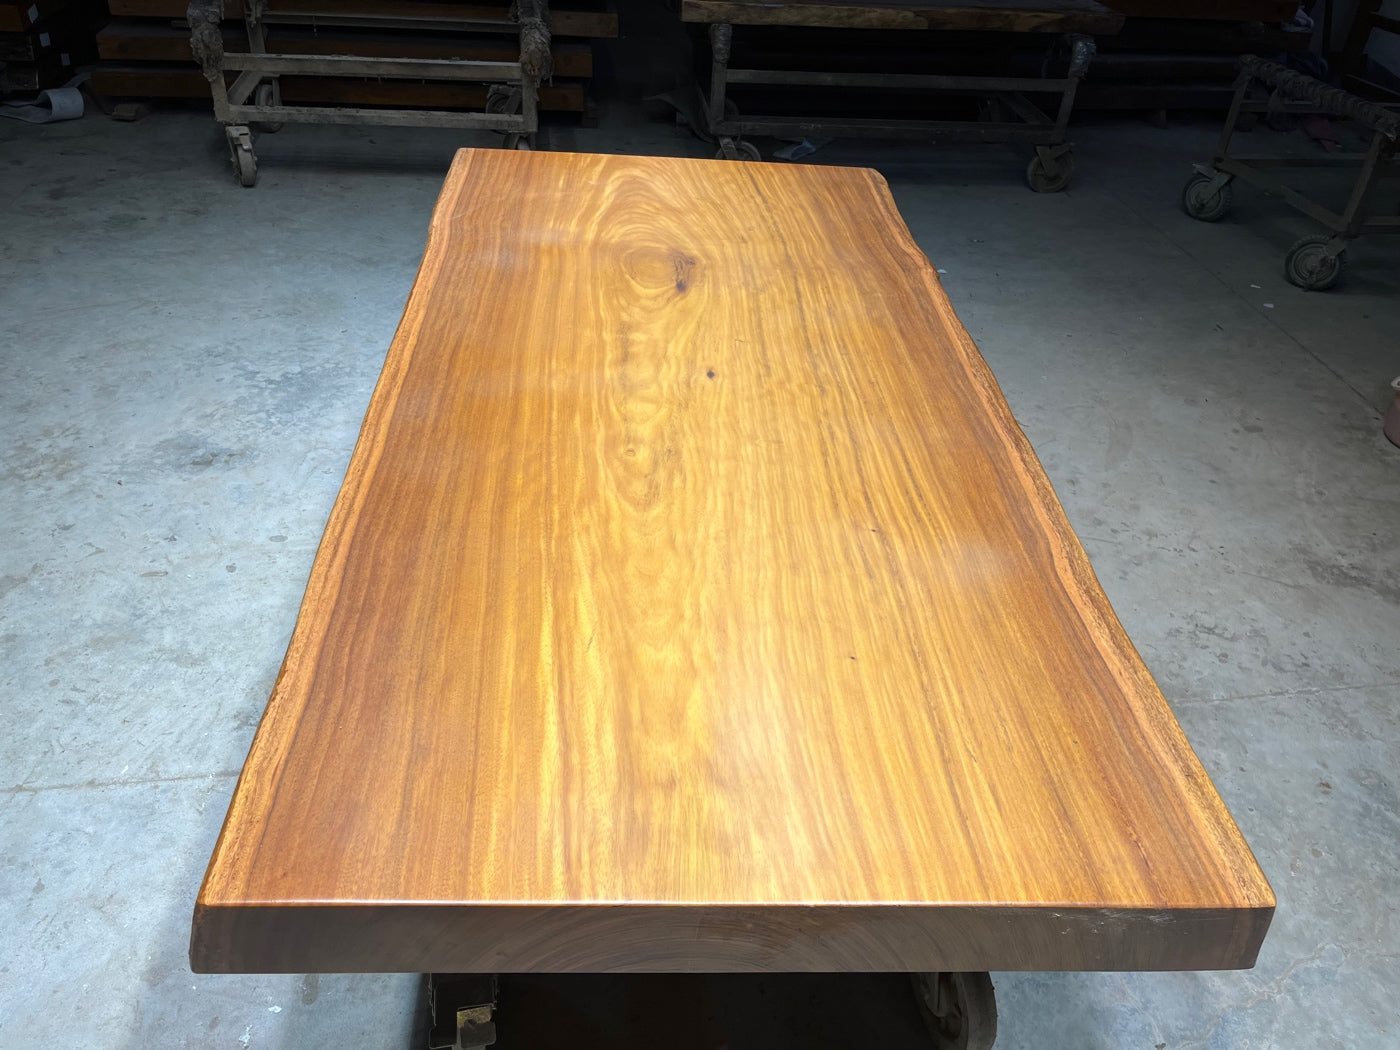 Tali wood slab table legs, Tali wood table top,  Africa wood slab table designs